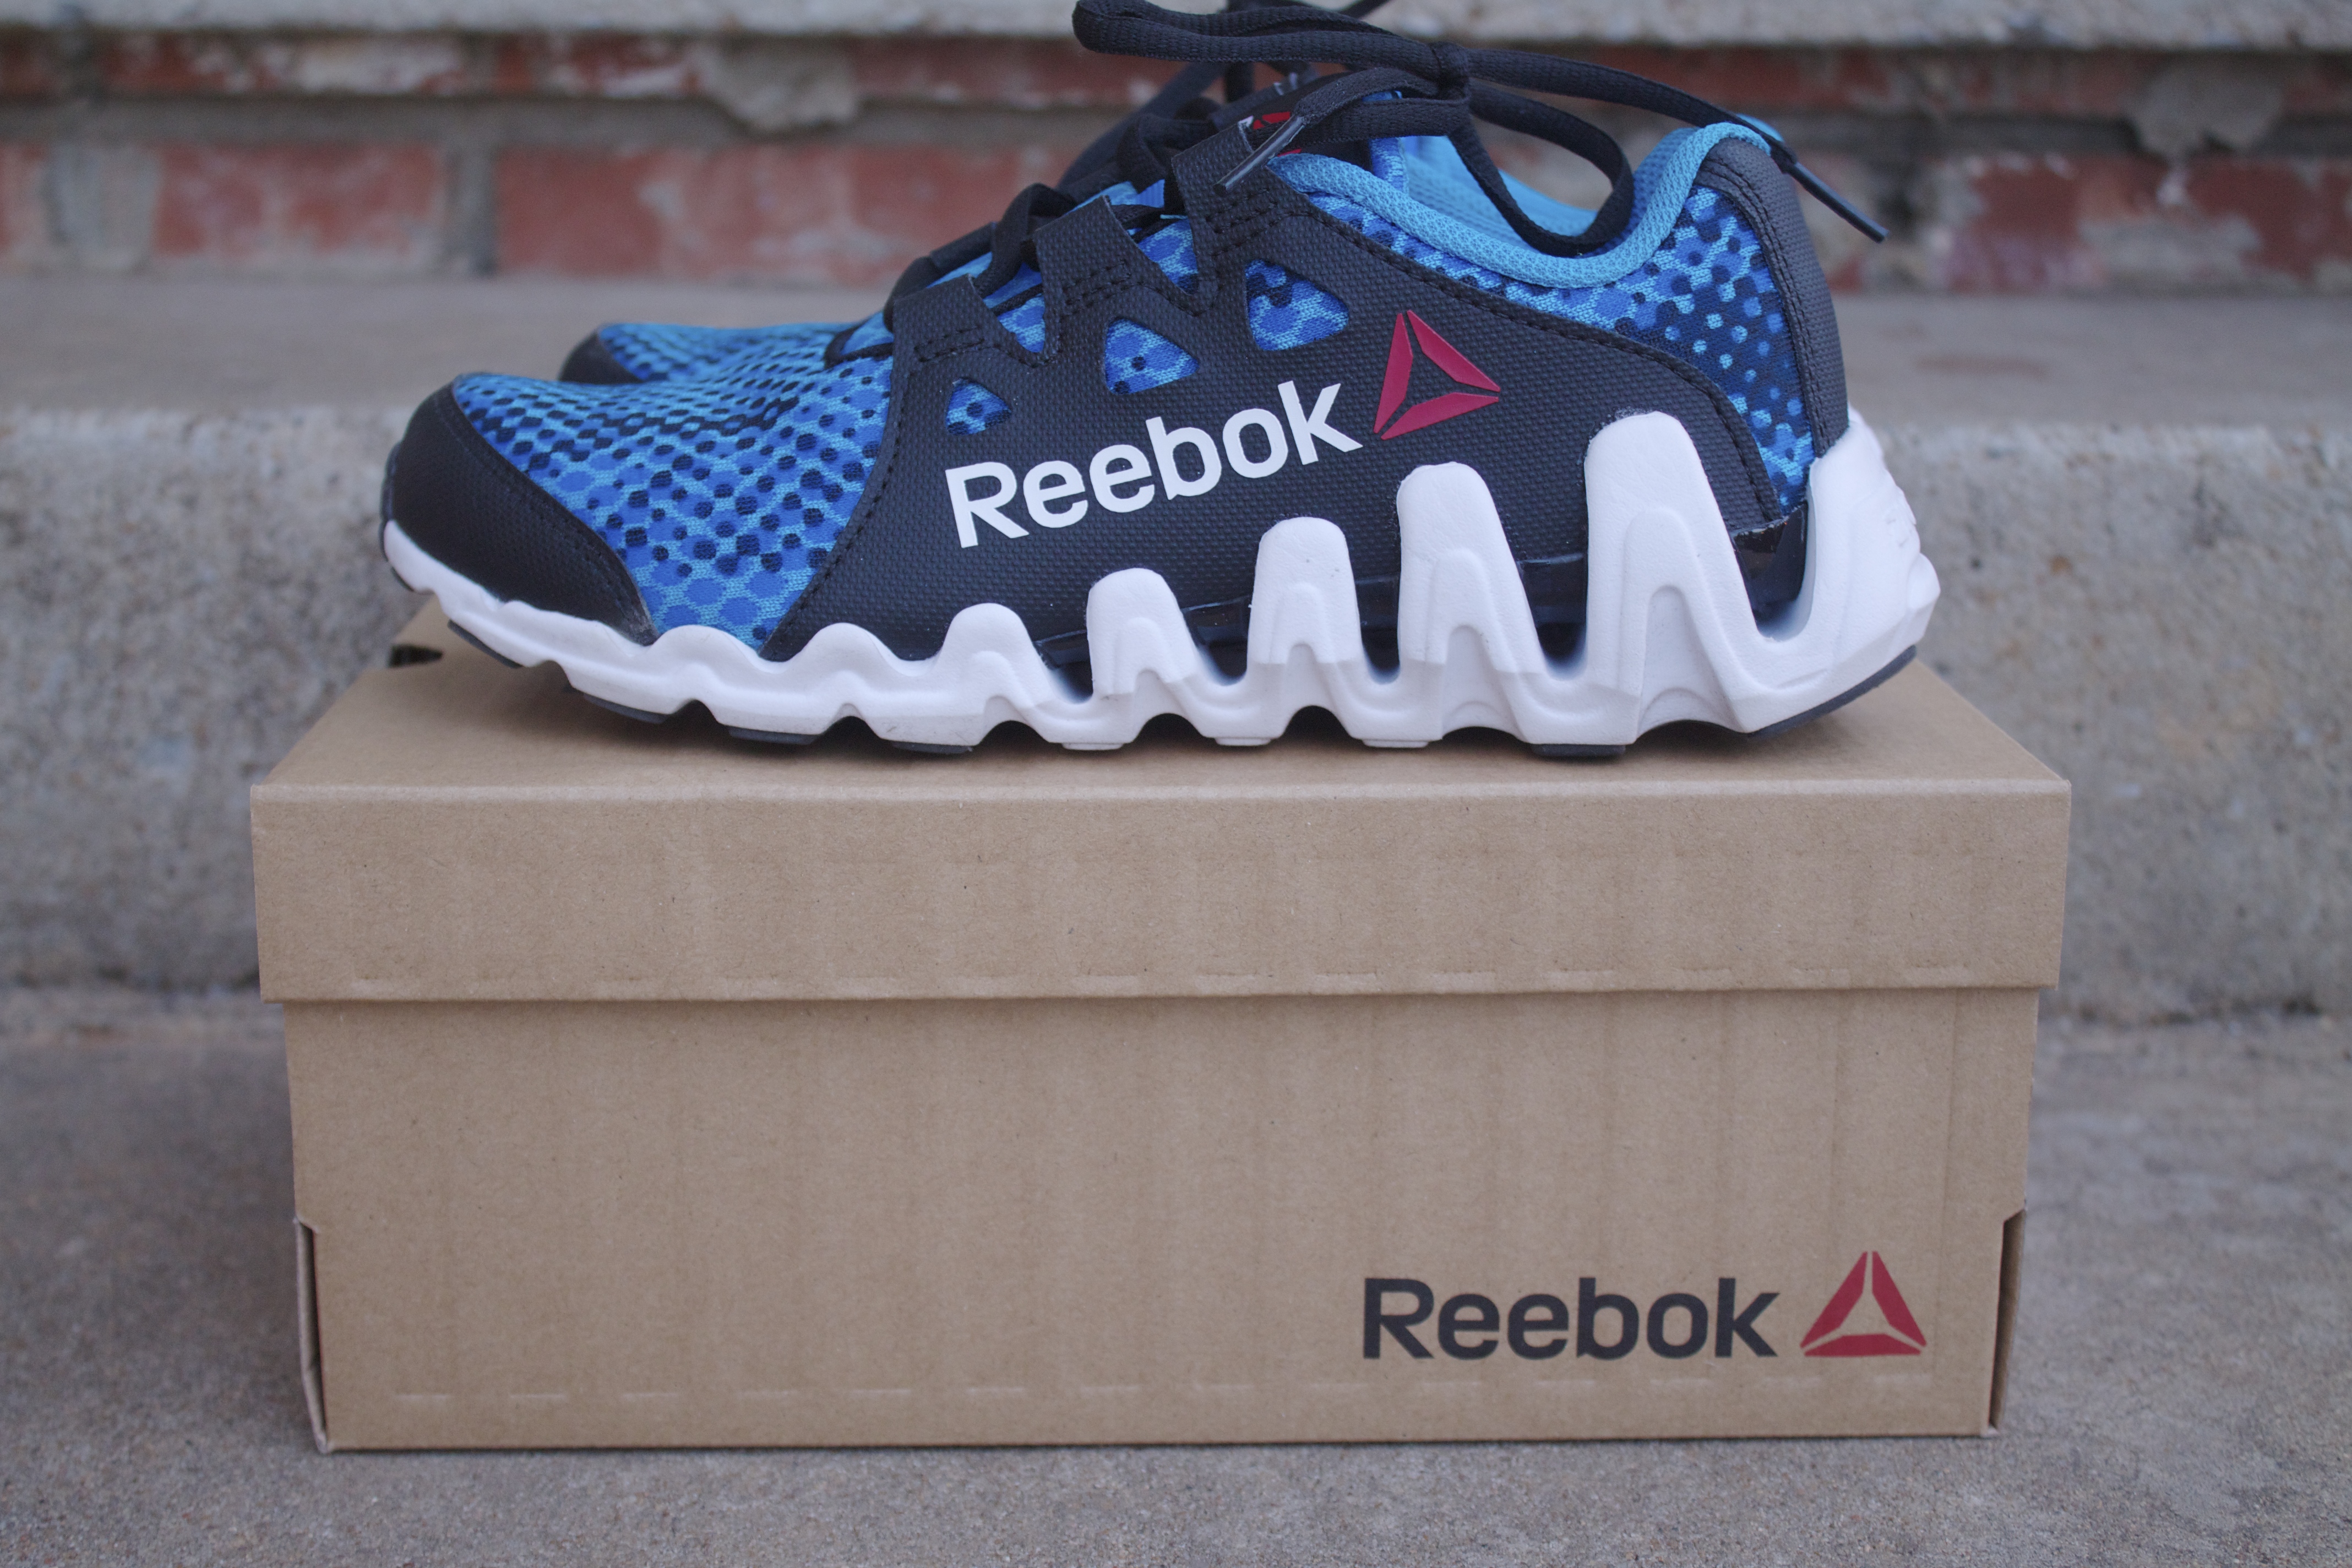 Reebok Sneakers For Shoe